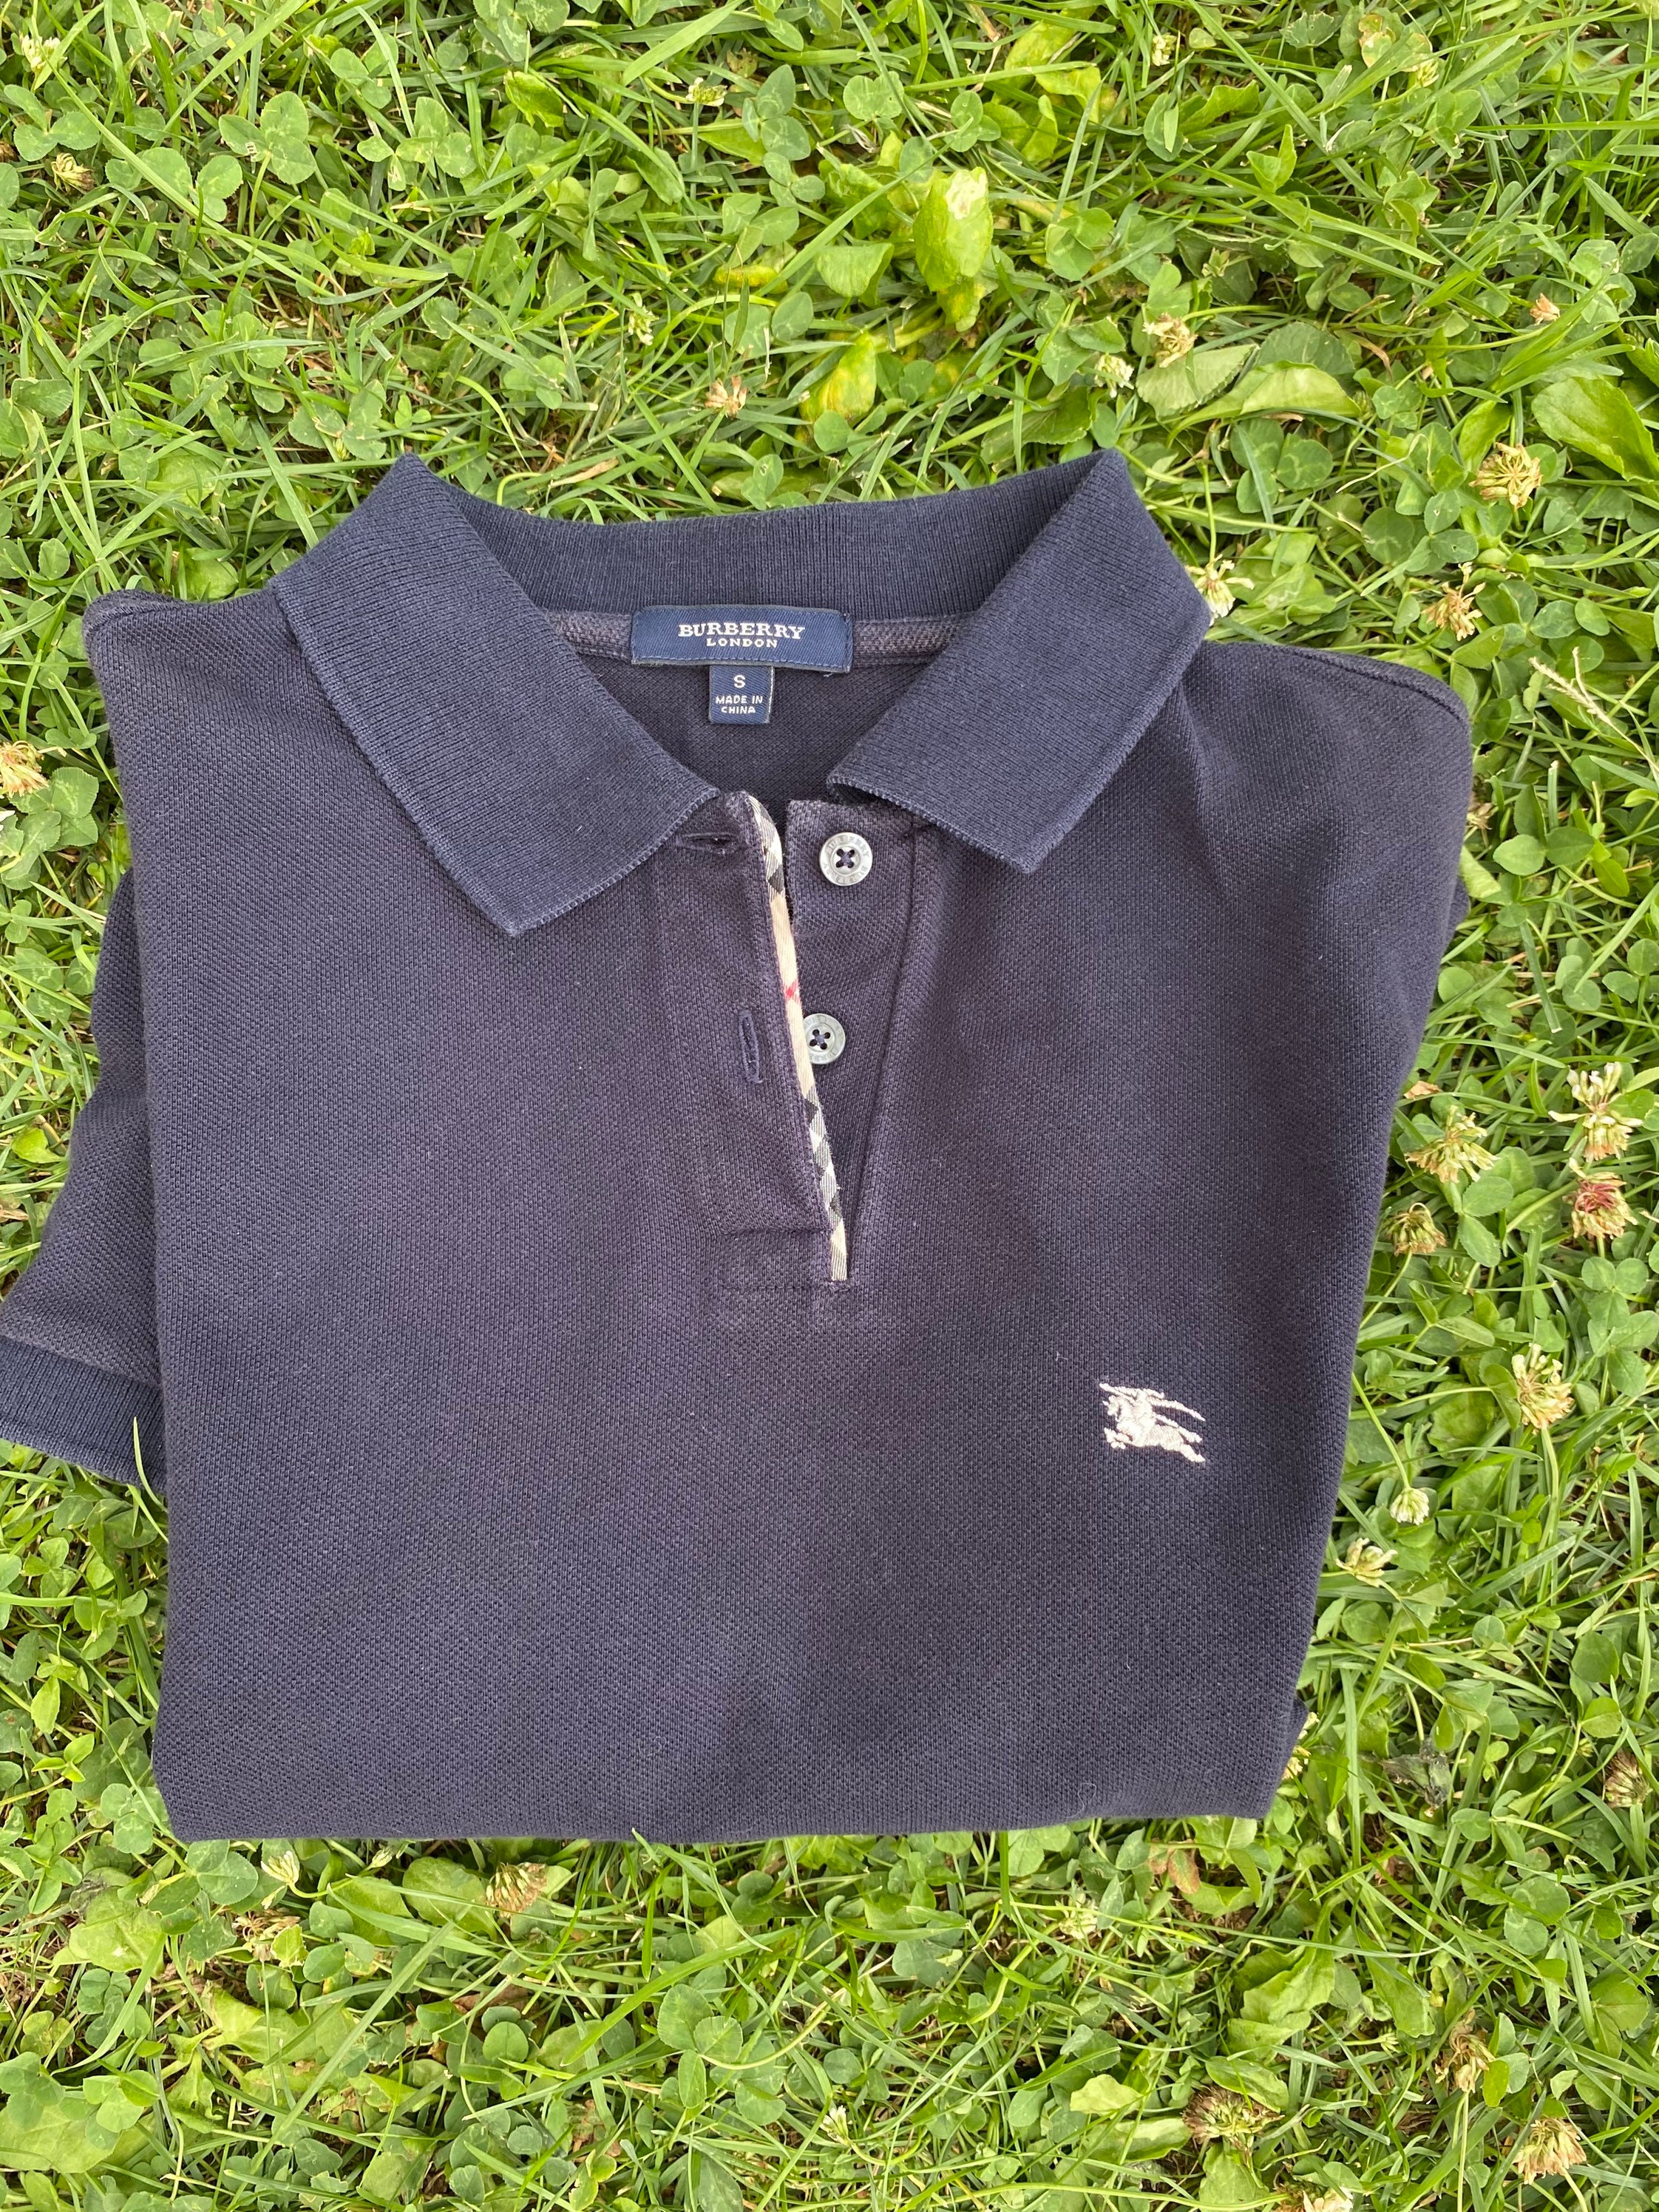 BOUTIQUEOCCASIONI Burberry T-Shirt/Blue Cotton T-shirt/Burberry Polo Shirt Made in China/Fashion Burberry T-Shirt